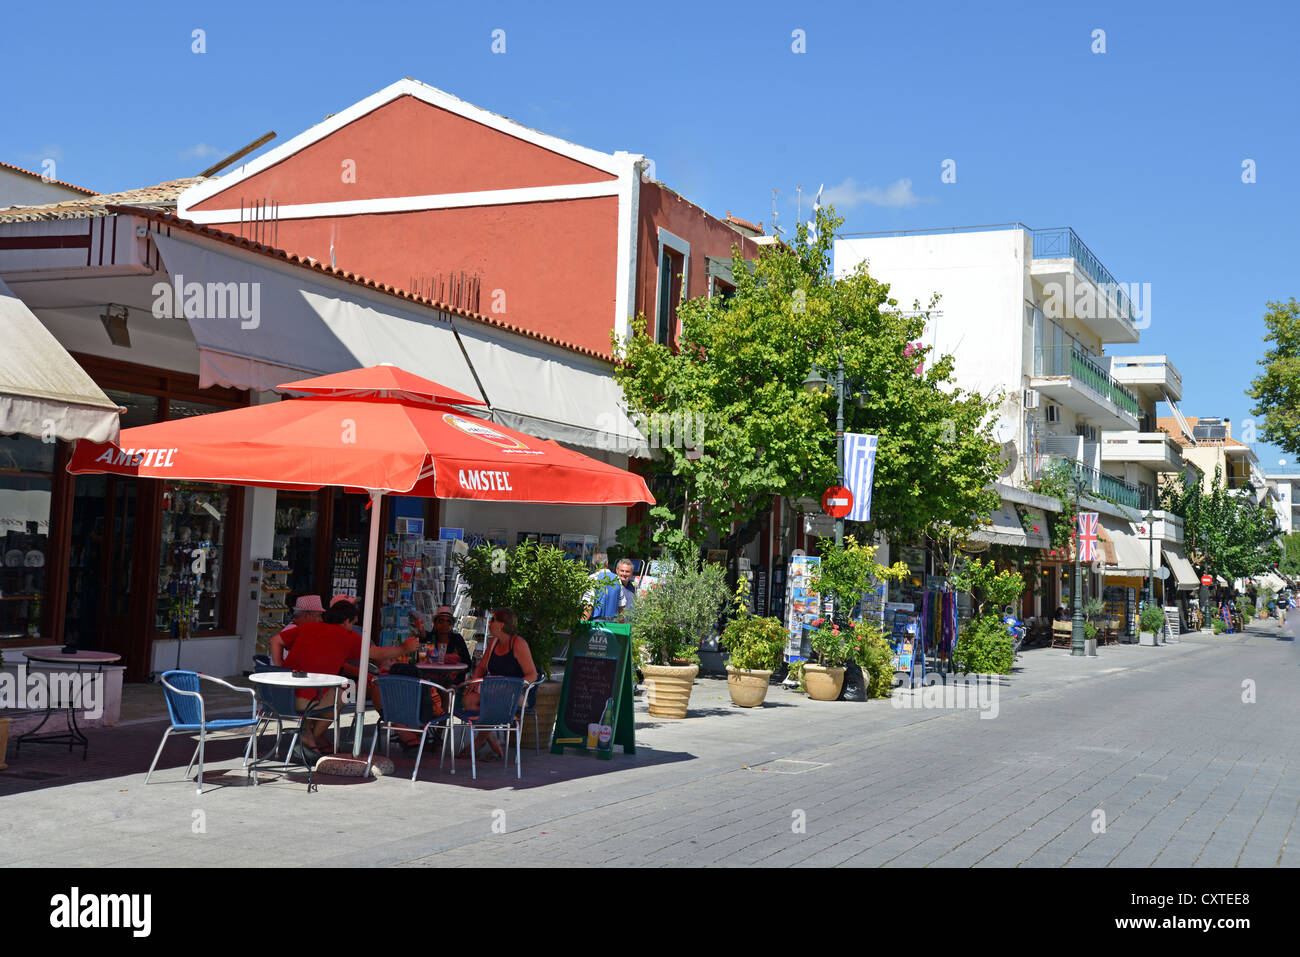 Main street, Olympia, Elis, West Greece Region, Greece Stock Photo